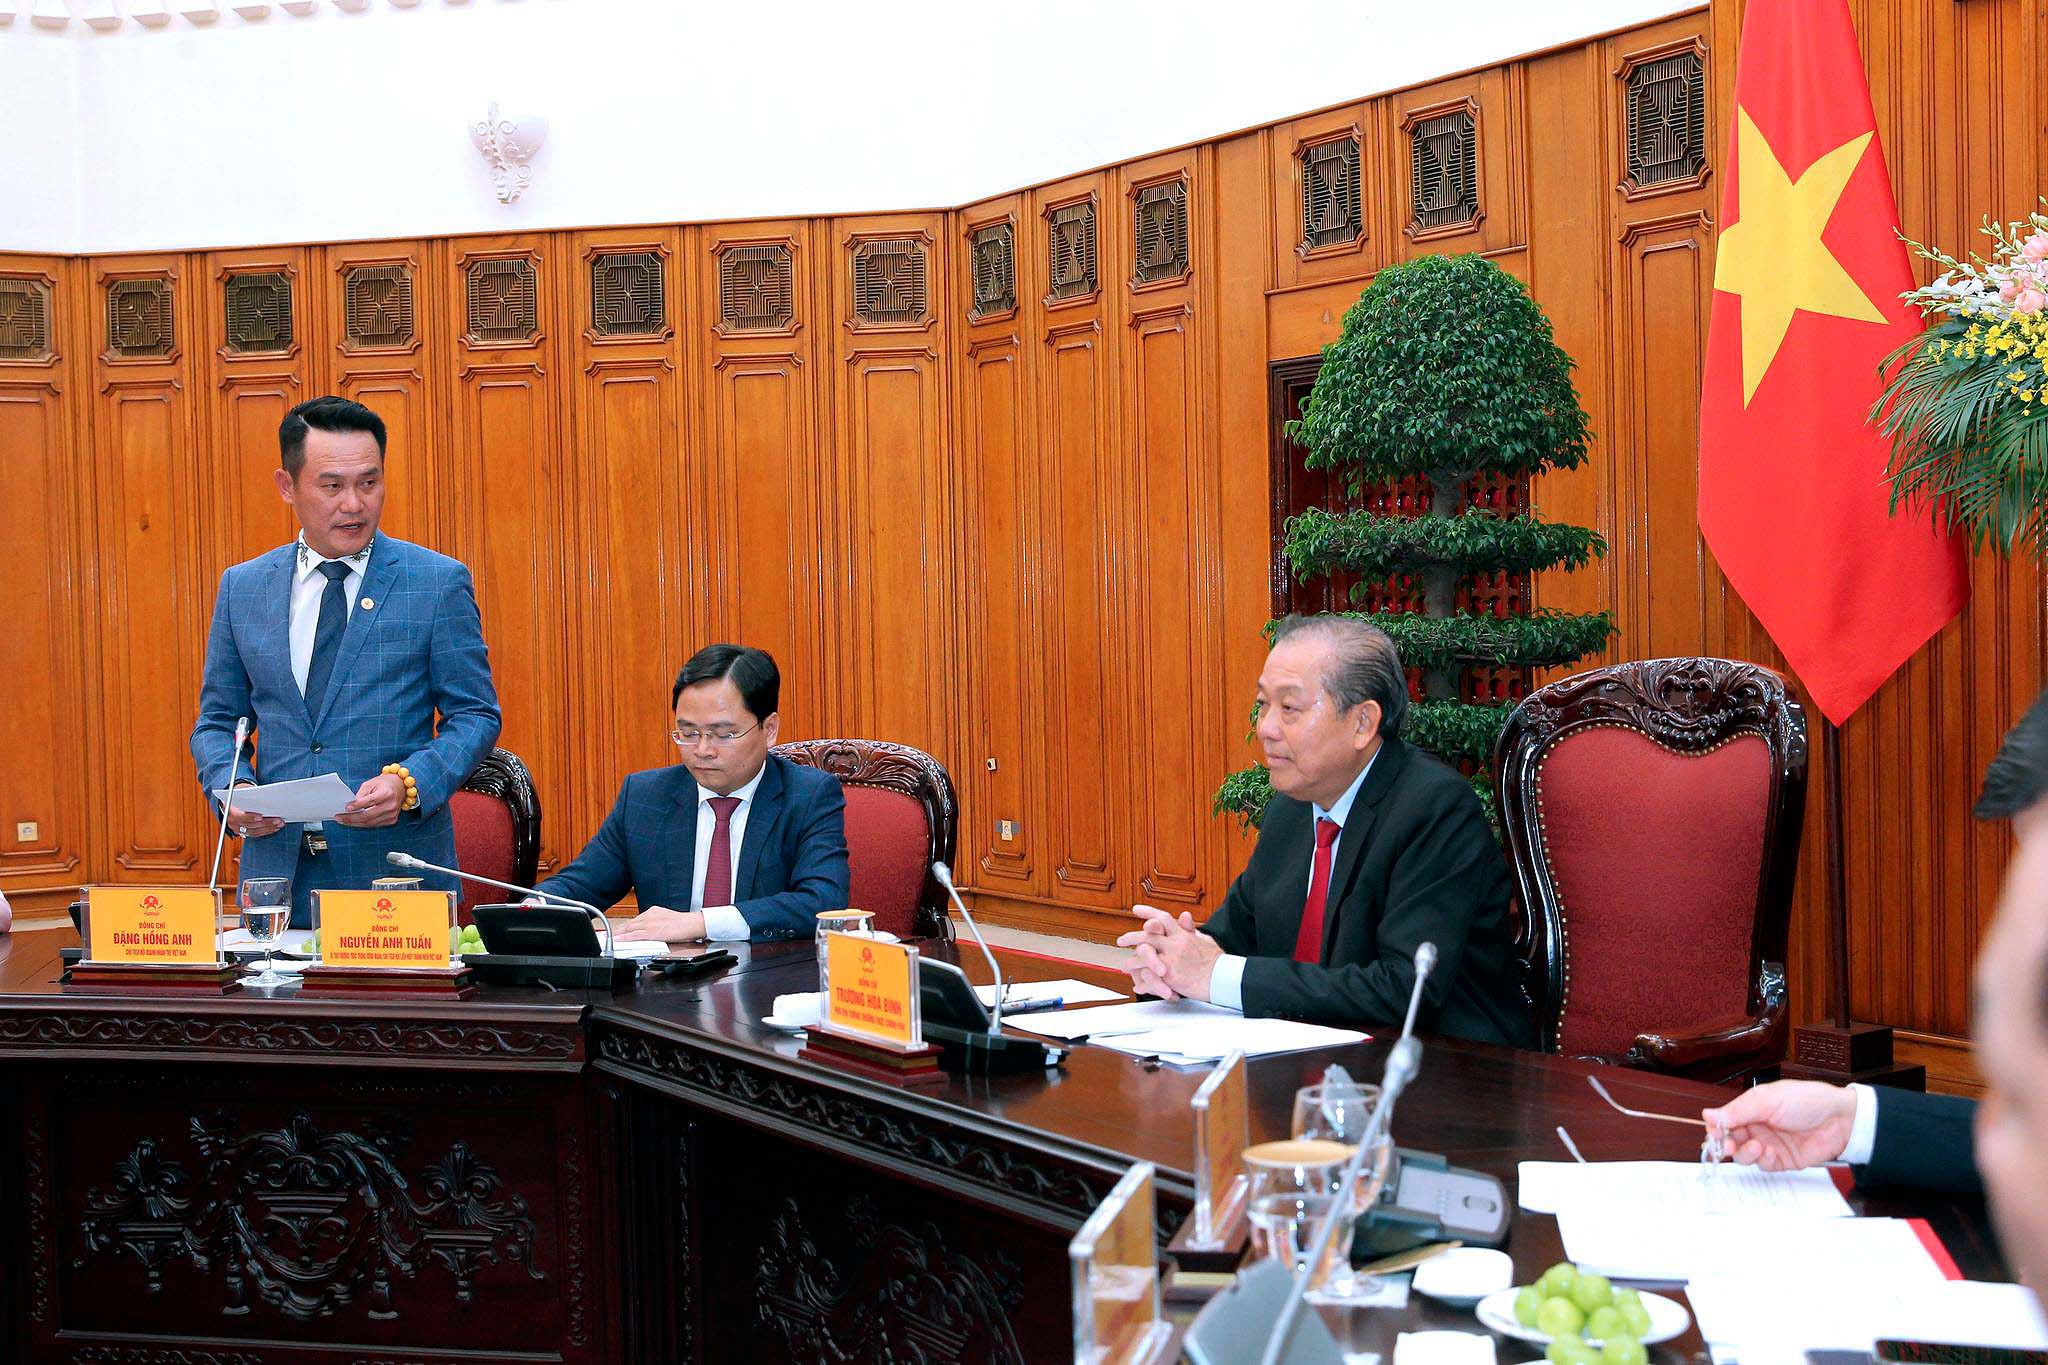 ông Đặng Hồng Anh, Chủ tịch Hội doanh nhân trẻ Việt Nam phát biểu với Phó thủ tướng.